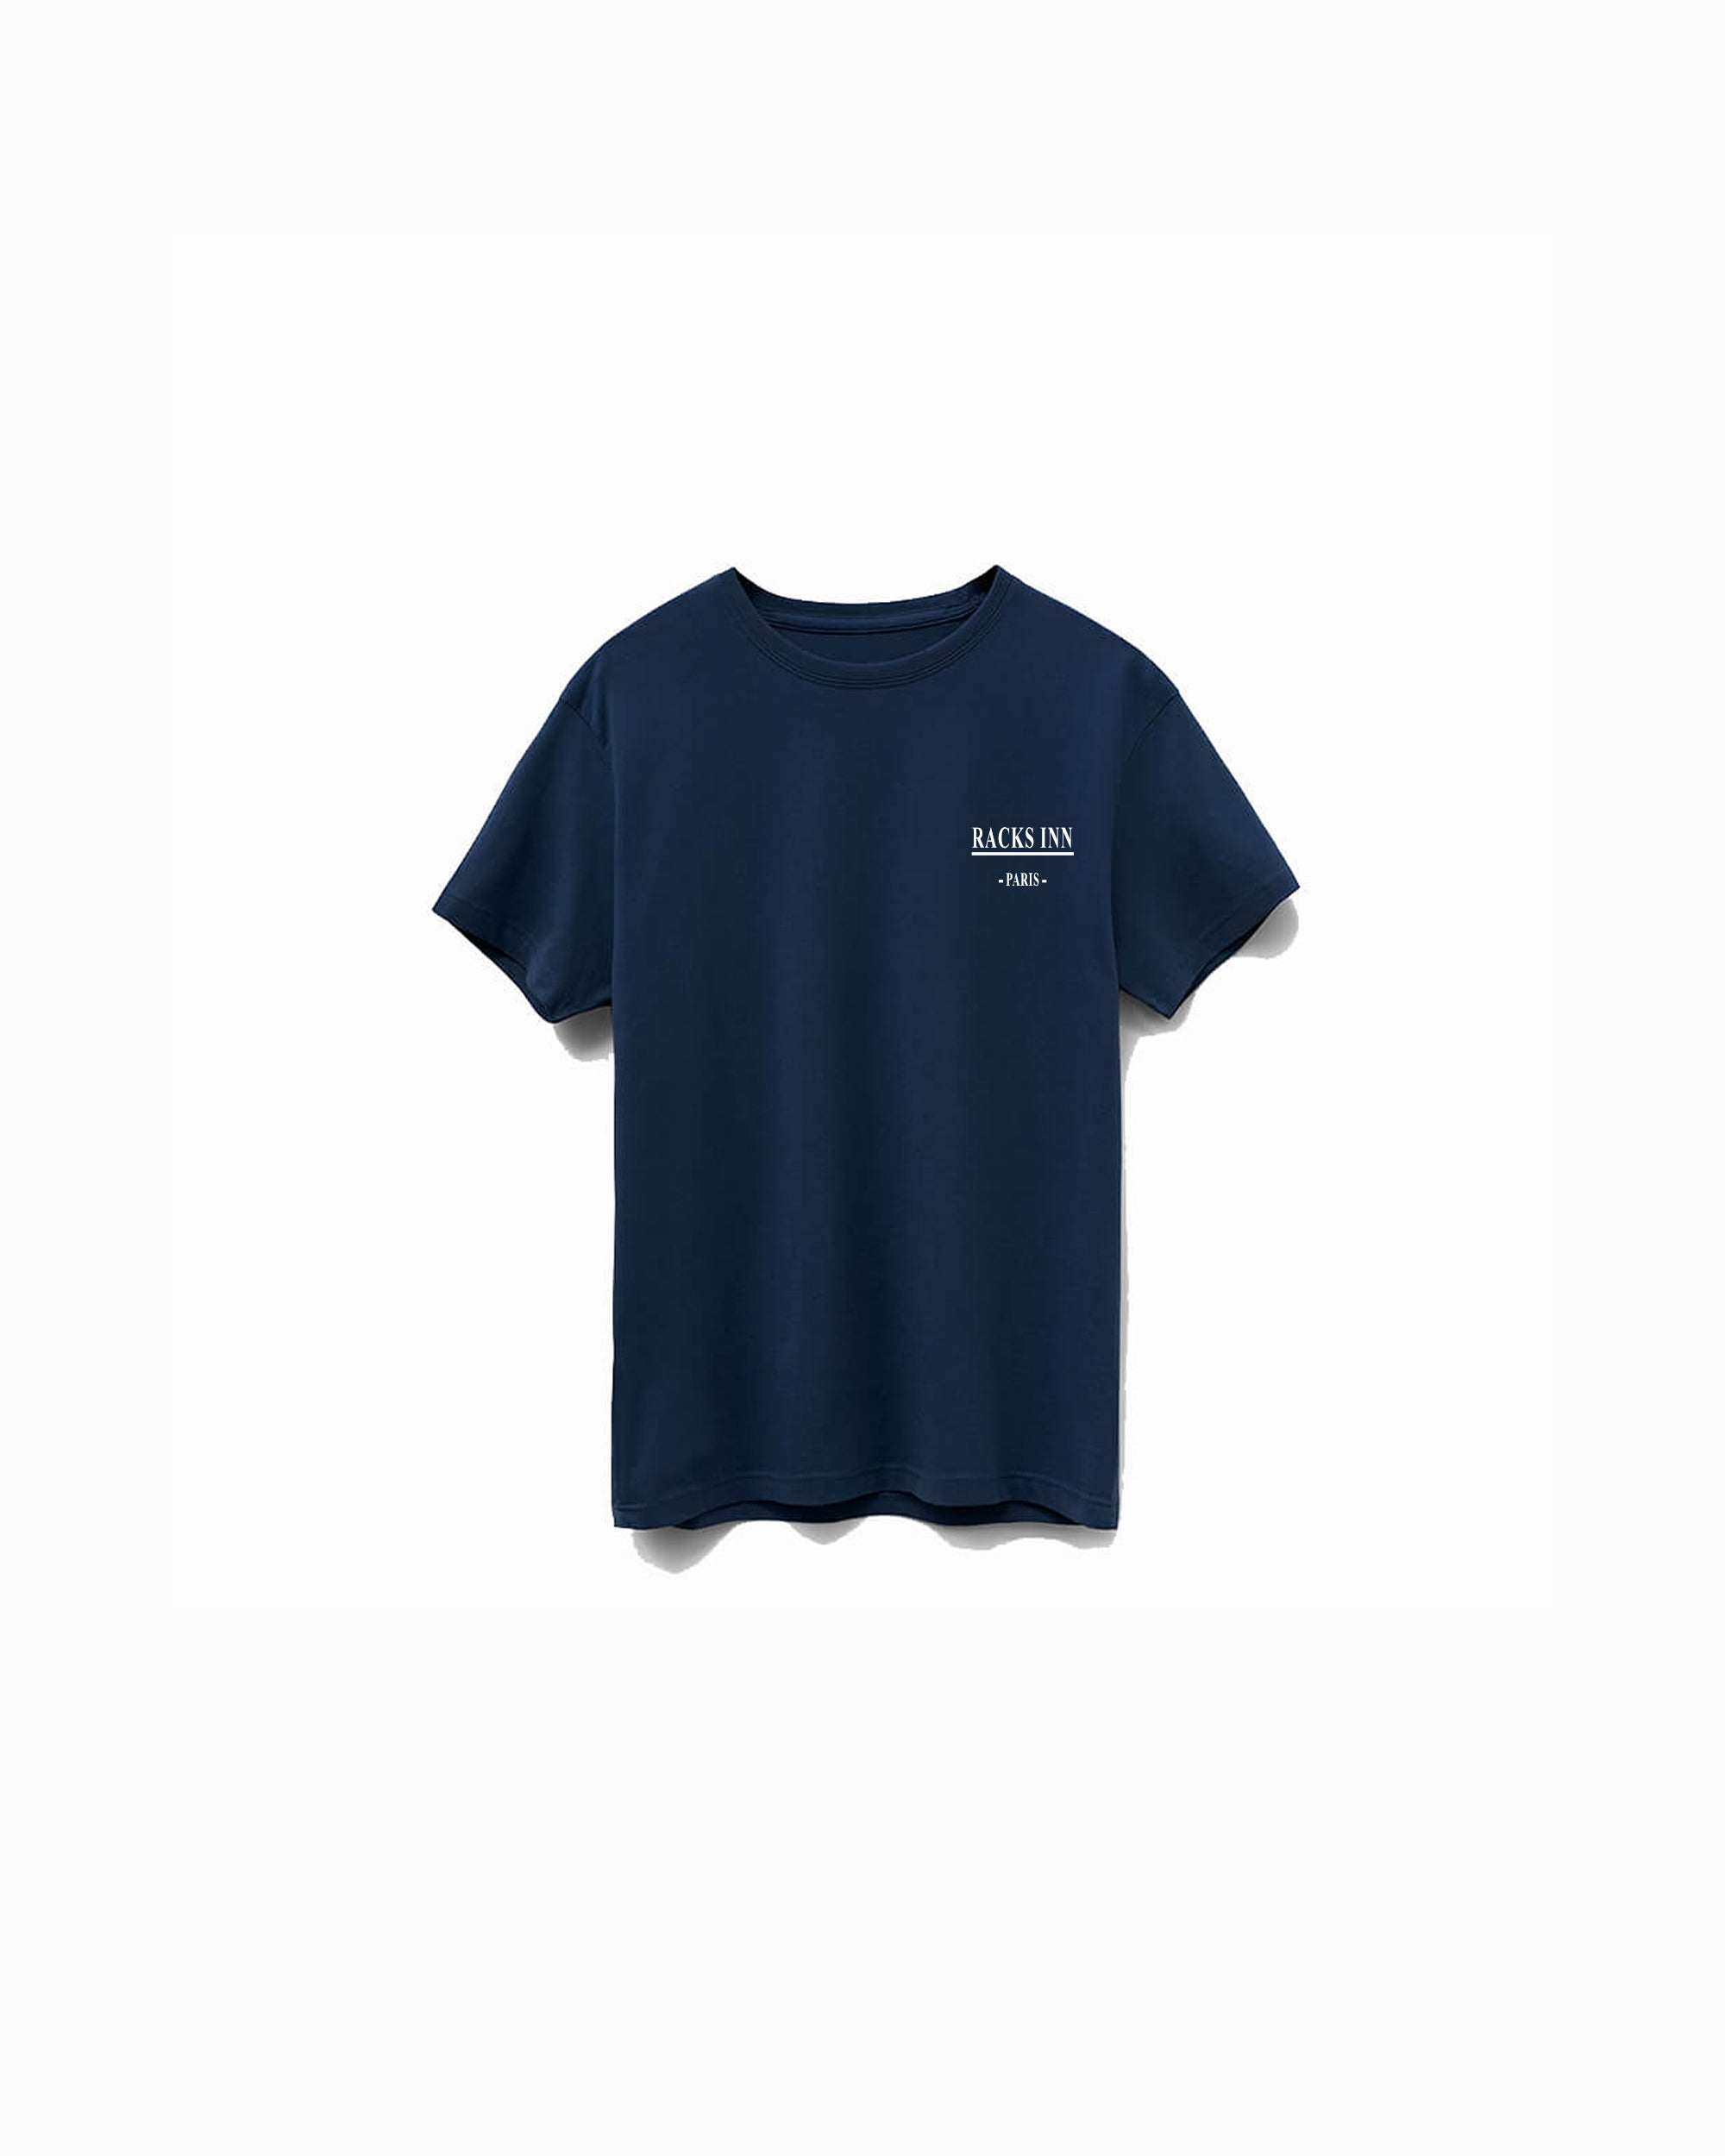 Paris T-Shirt - Navy